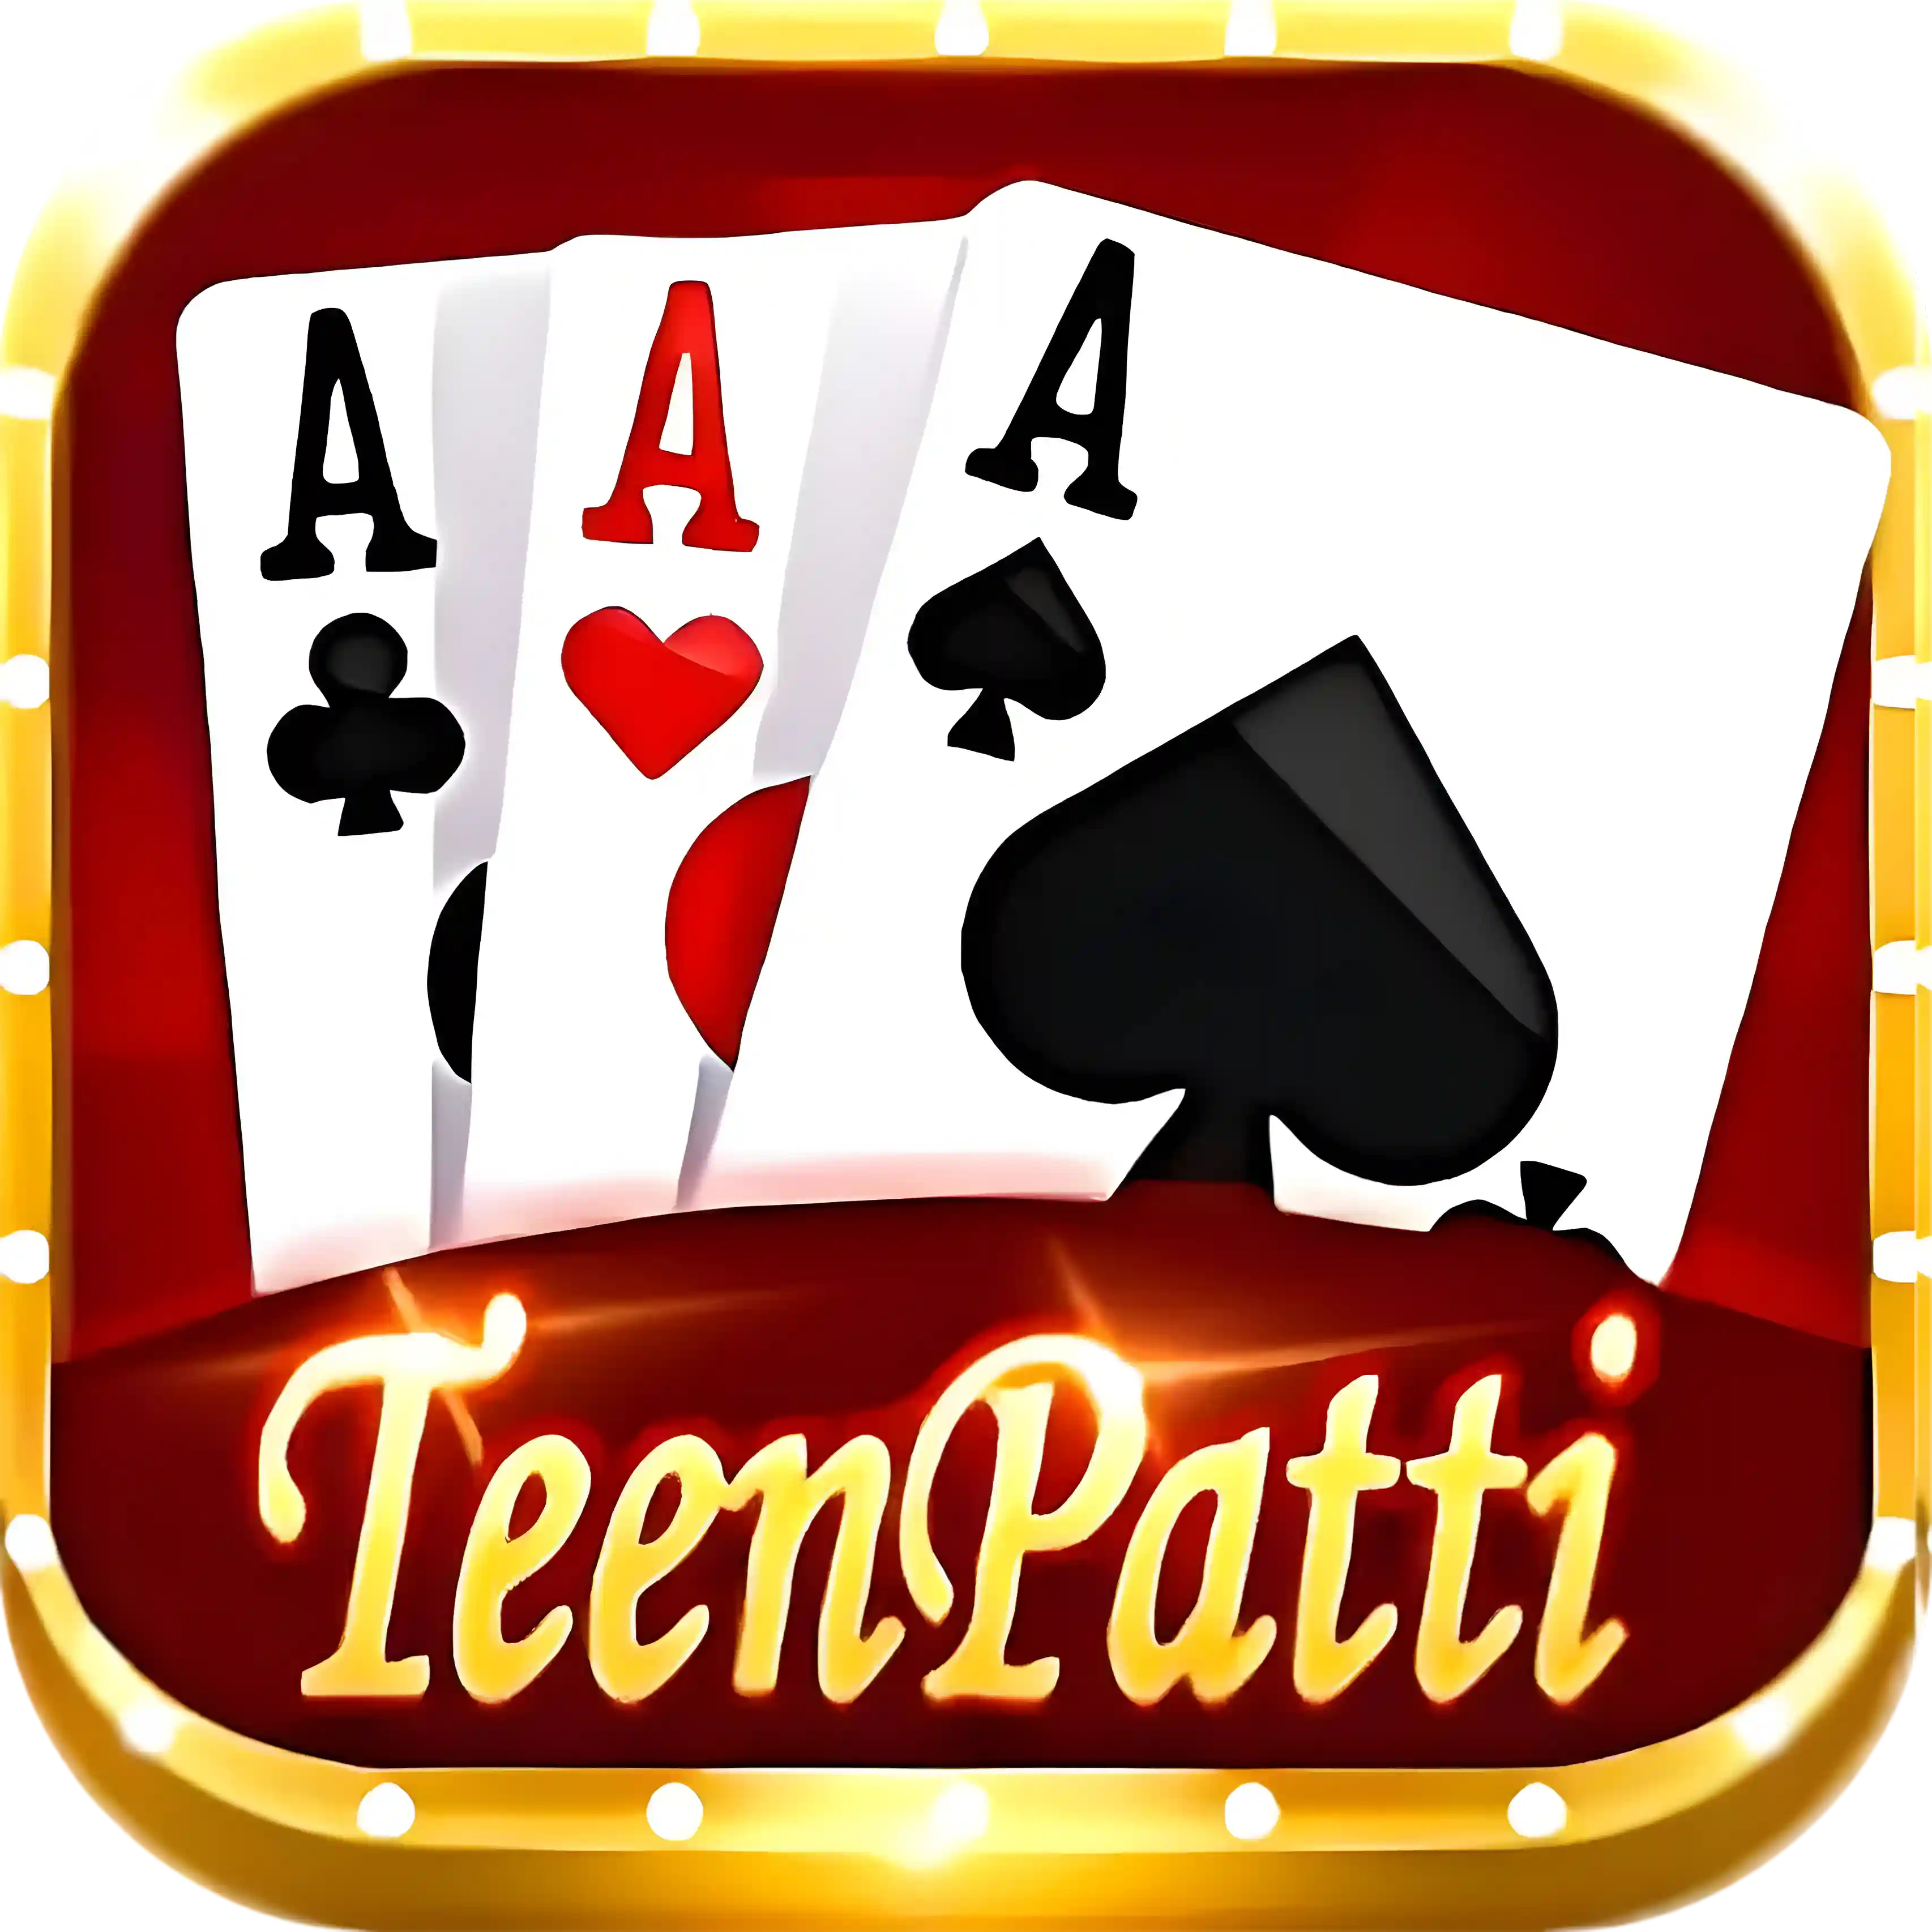 Teen Patti Master - All Rummy App - All Rummy Apps - HighBonusRummy